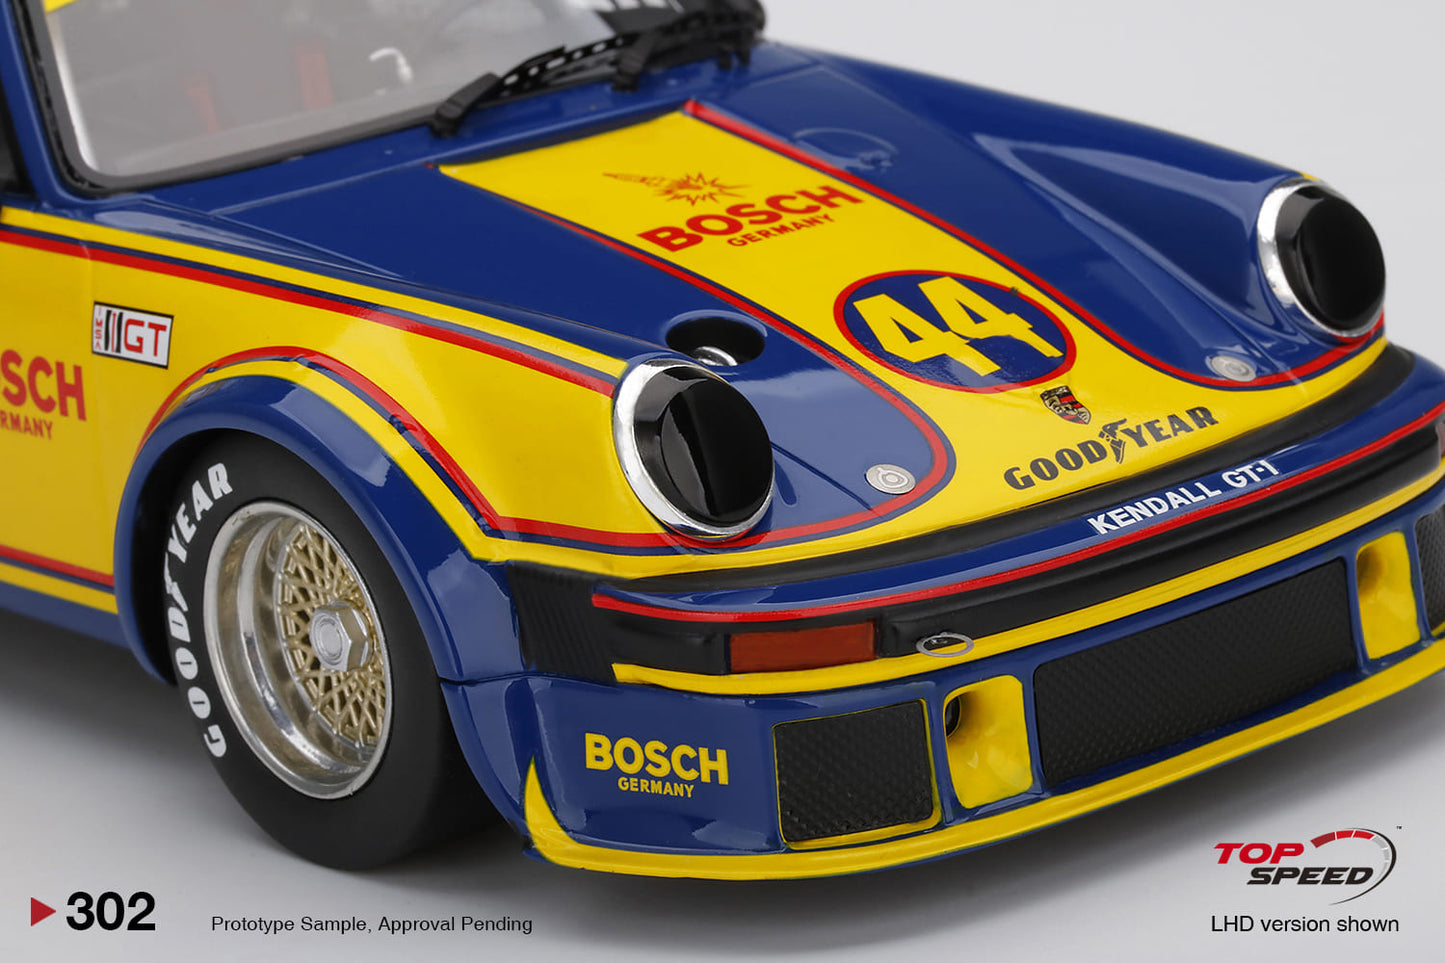 Topspeed 1:18 Porsche 934.5 #44 John Sisk Racing  1977 IMSA Mid-Ohio